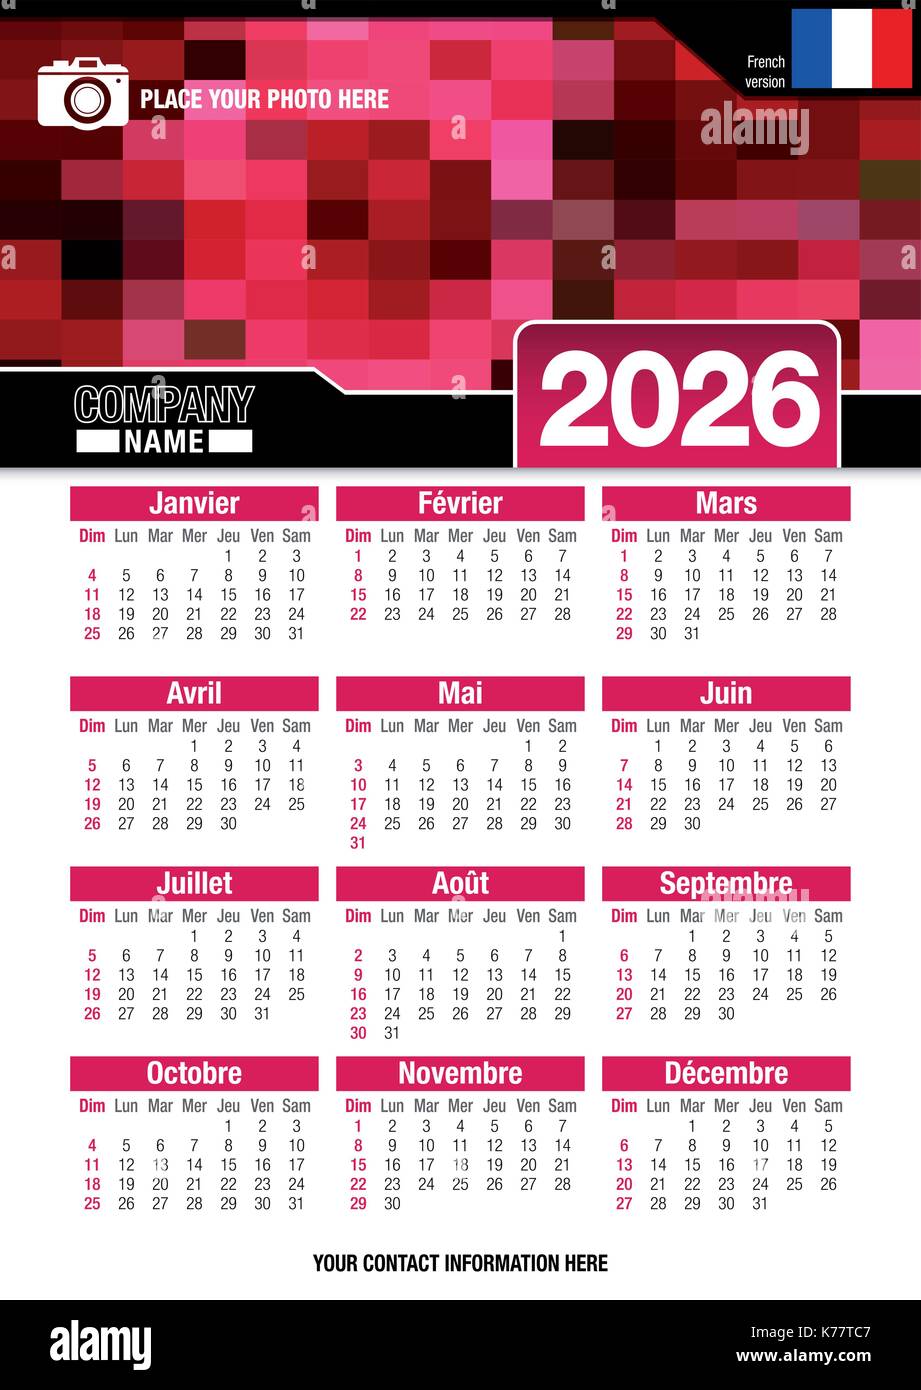 Utile calendario da parete 2026 con design di colori rosso mosaico. Formato A4 verticale. Dimensioni: 210mm x 297mm. Versione francese - immagine vettoriale Illustrazione Vettoriale